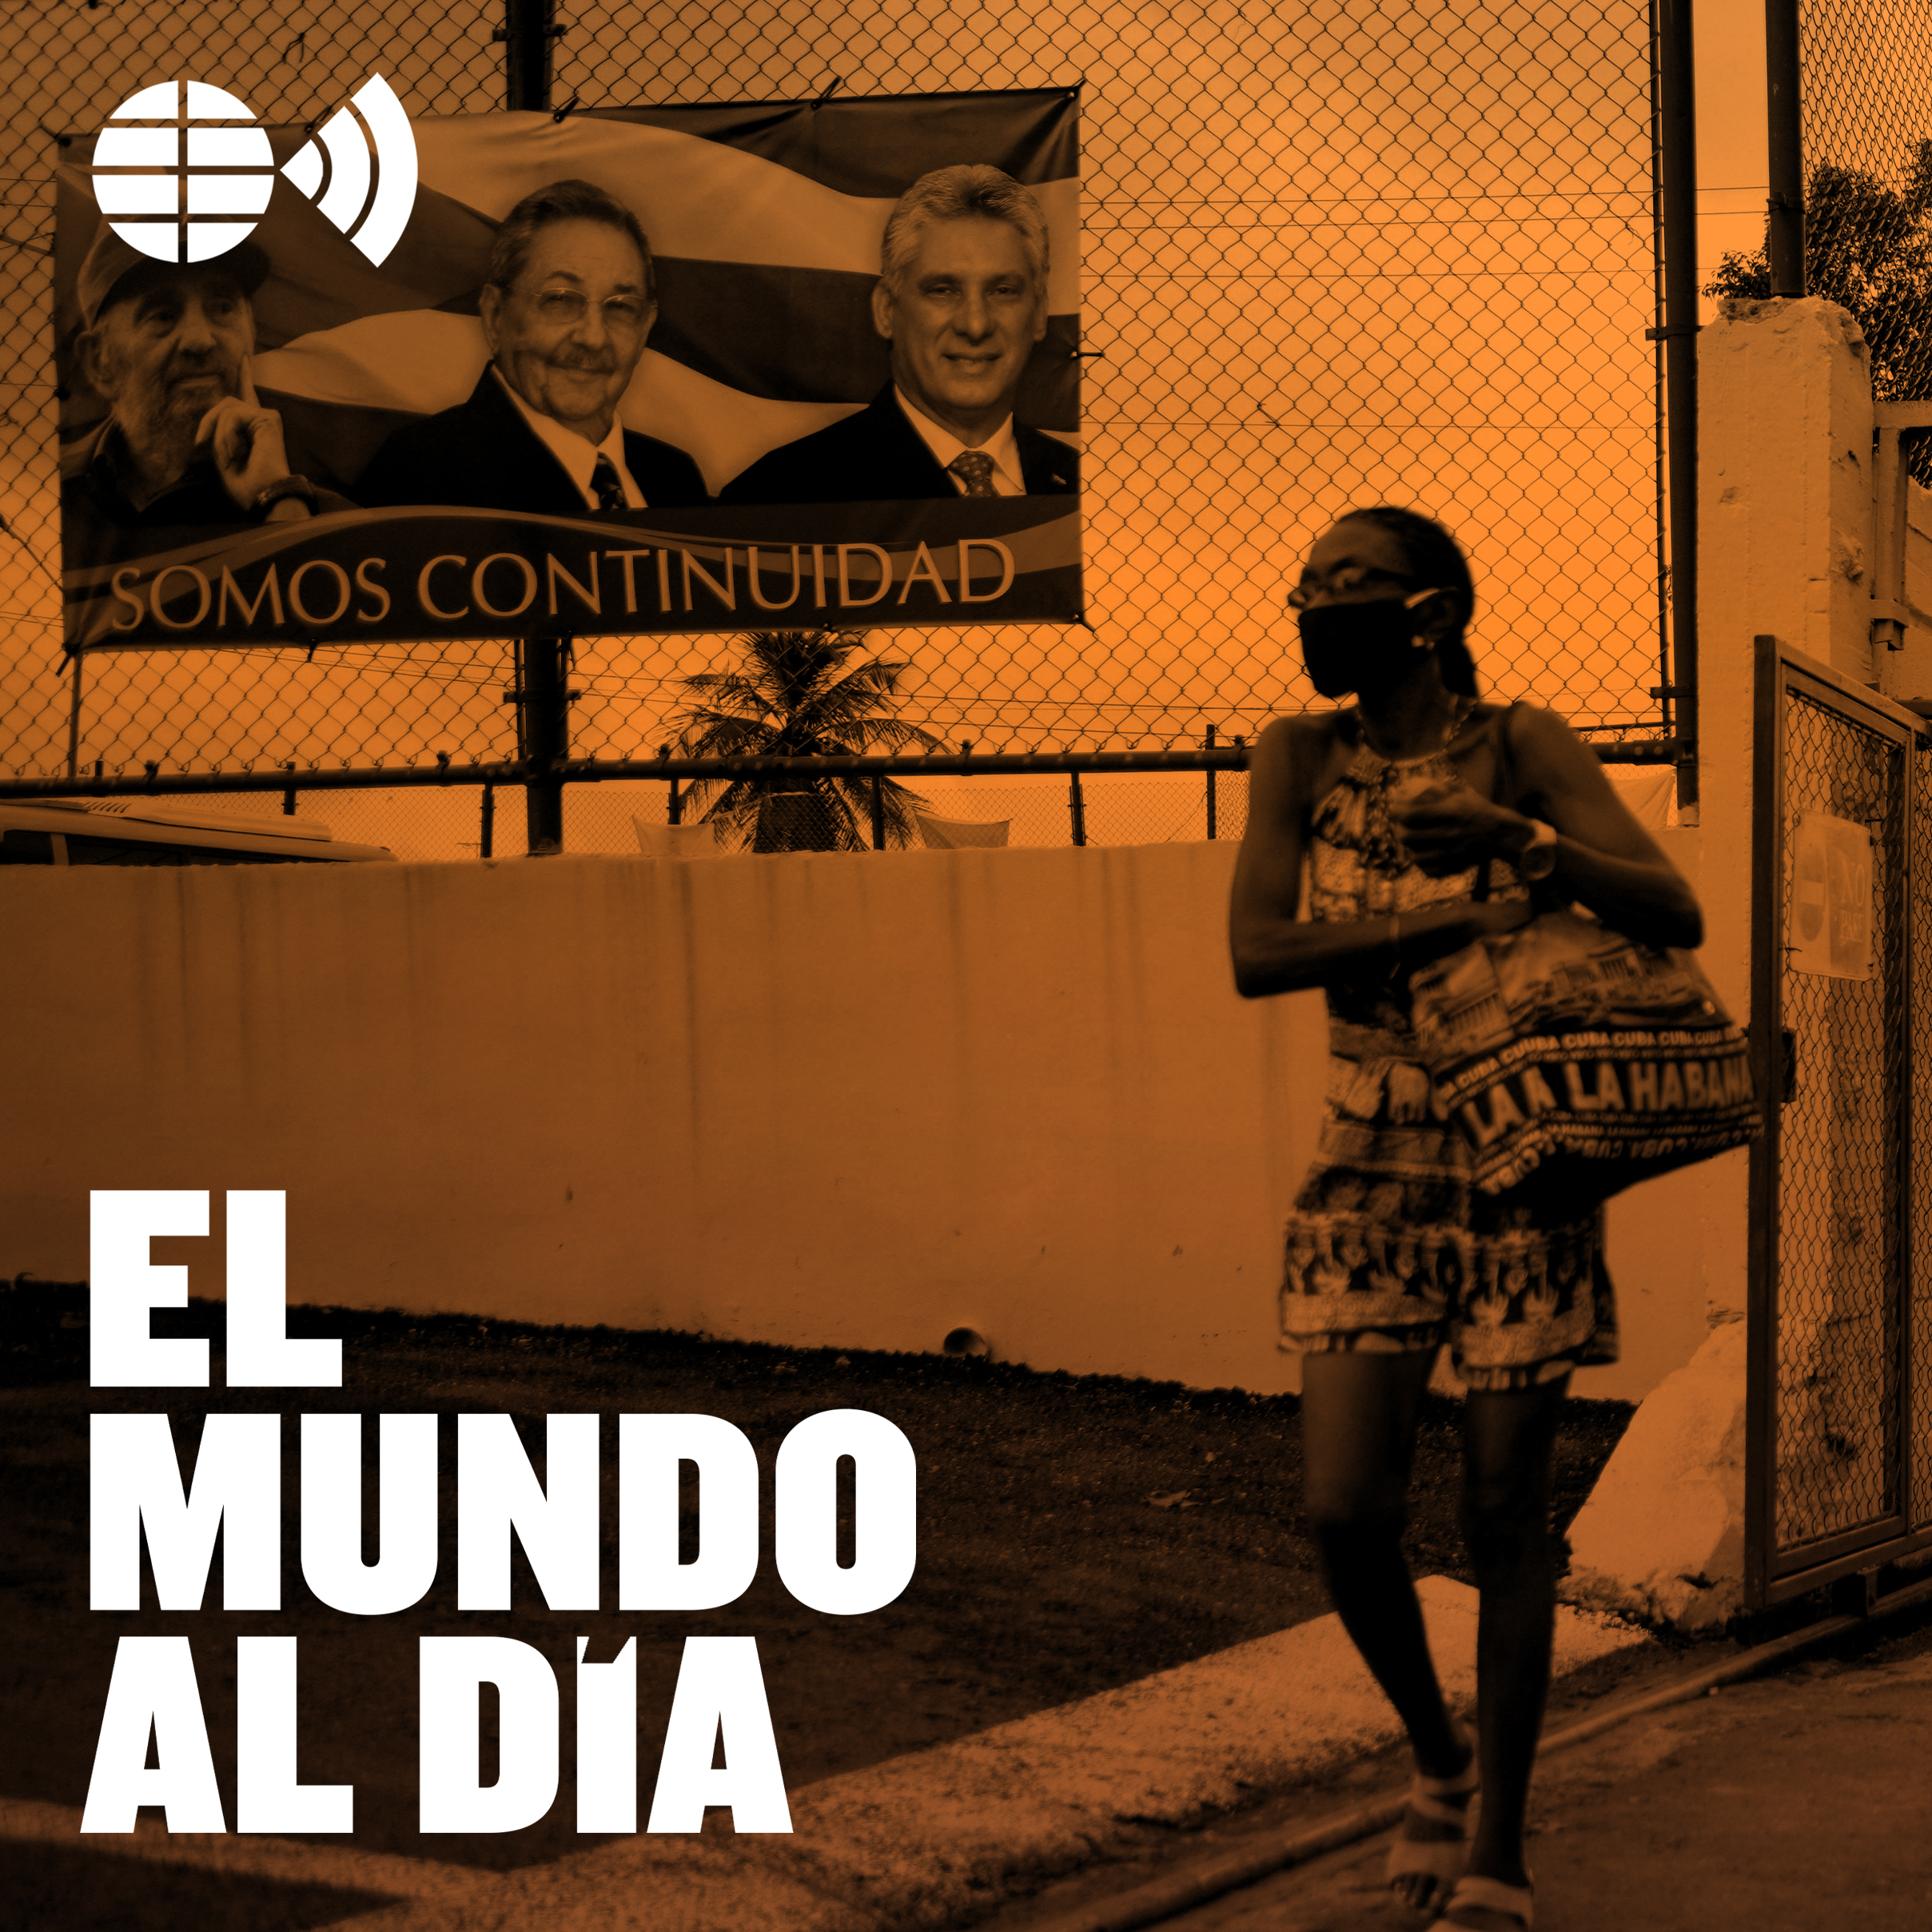 Cuba: hambre, miseria y represión